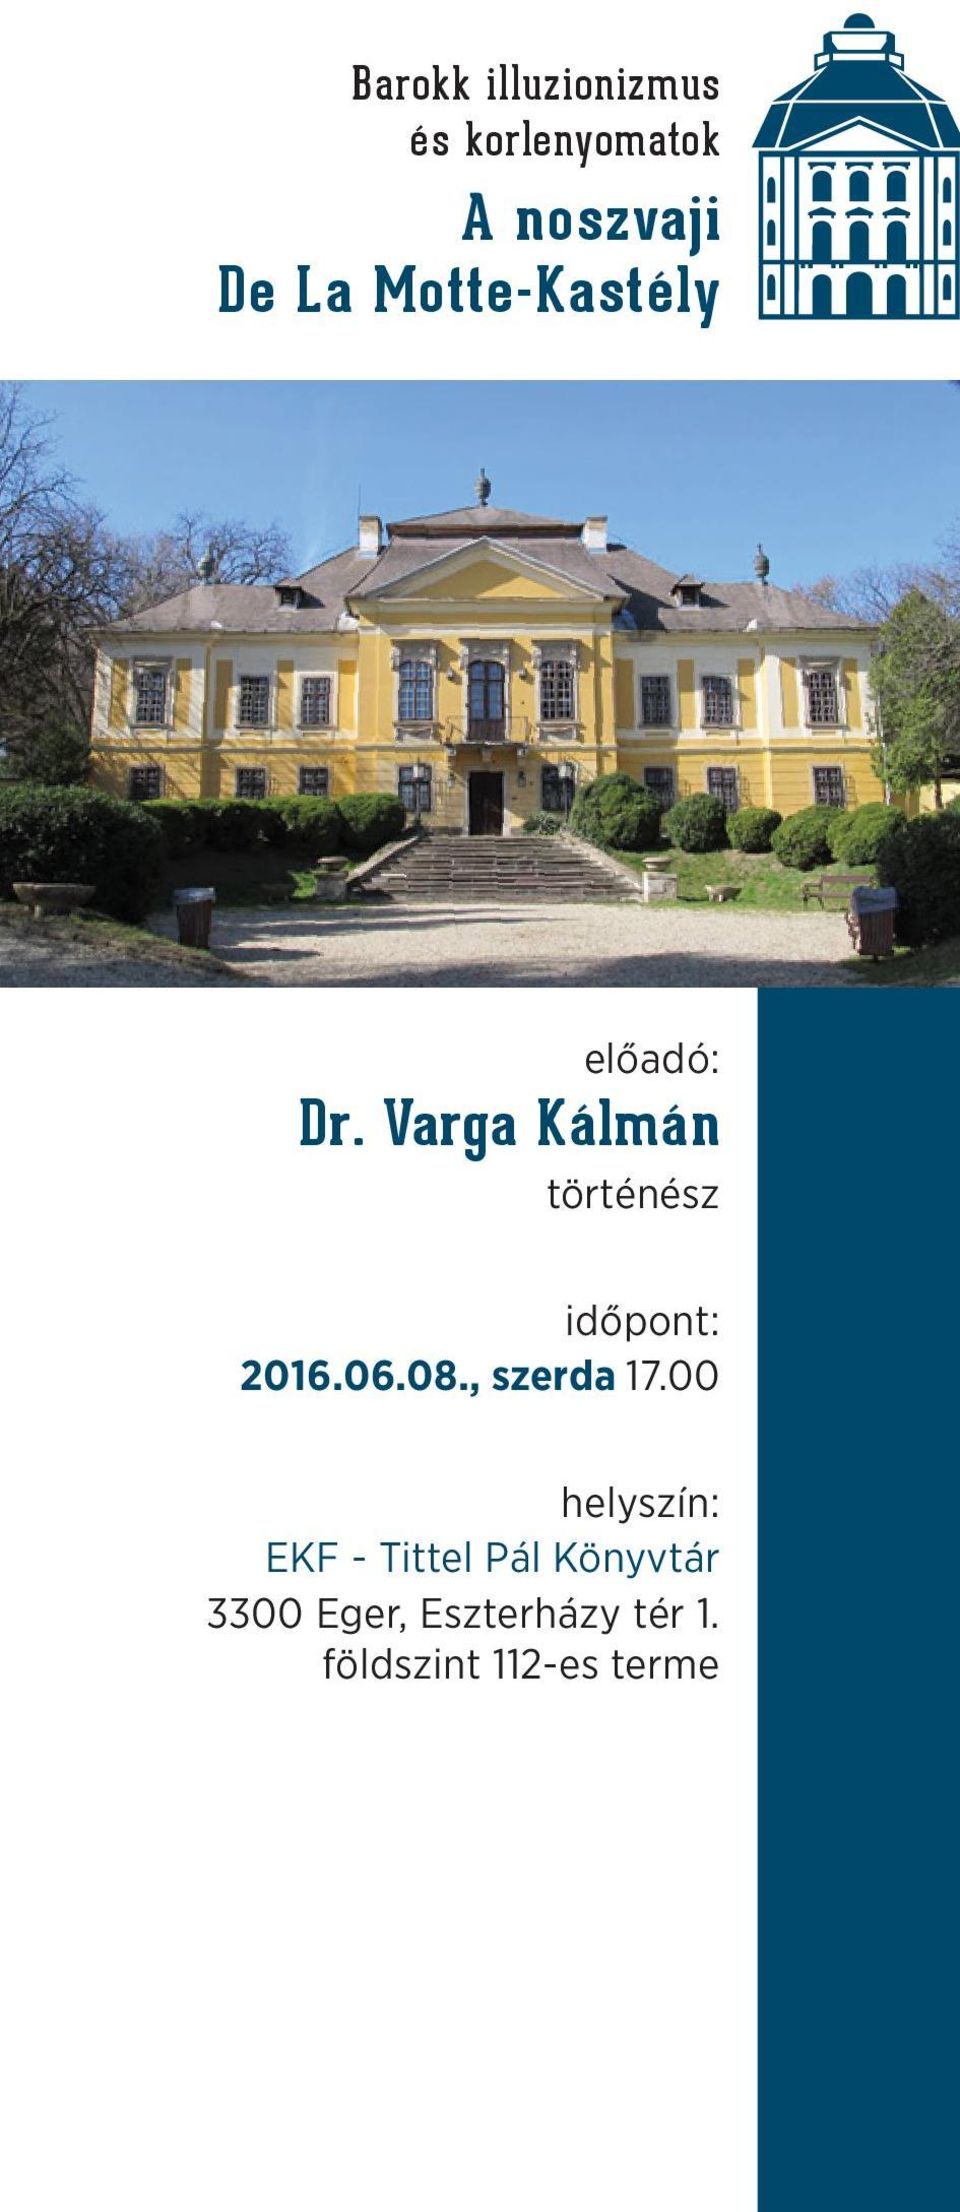 Varga Kálmán történész időpont: 2016.06.08., szerda 17.